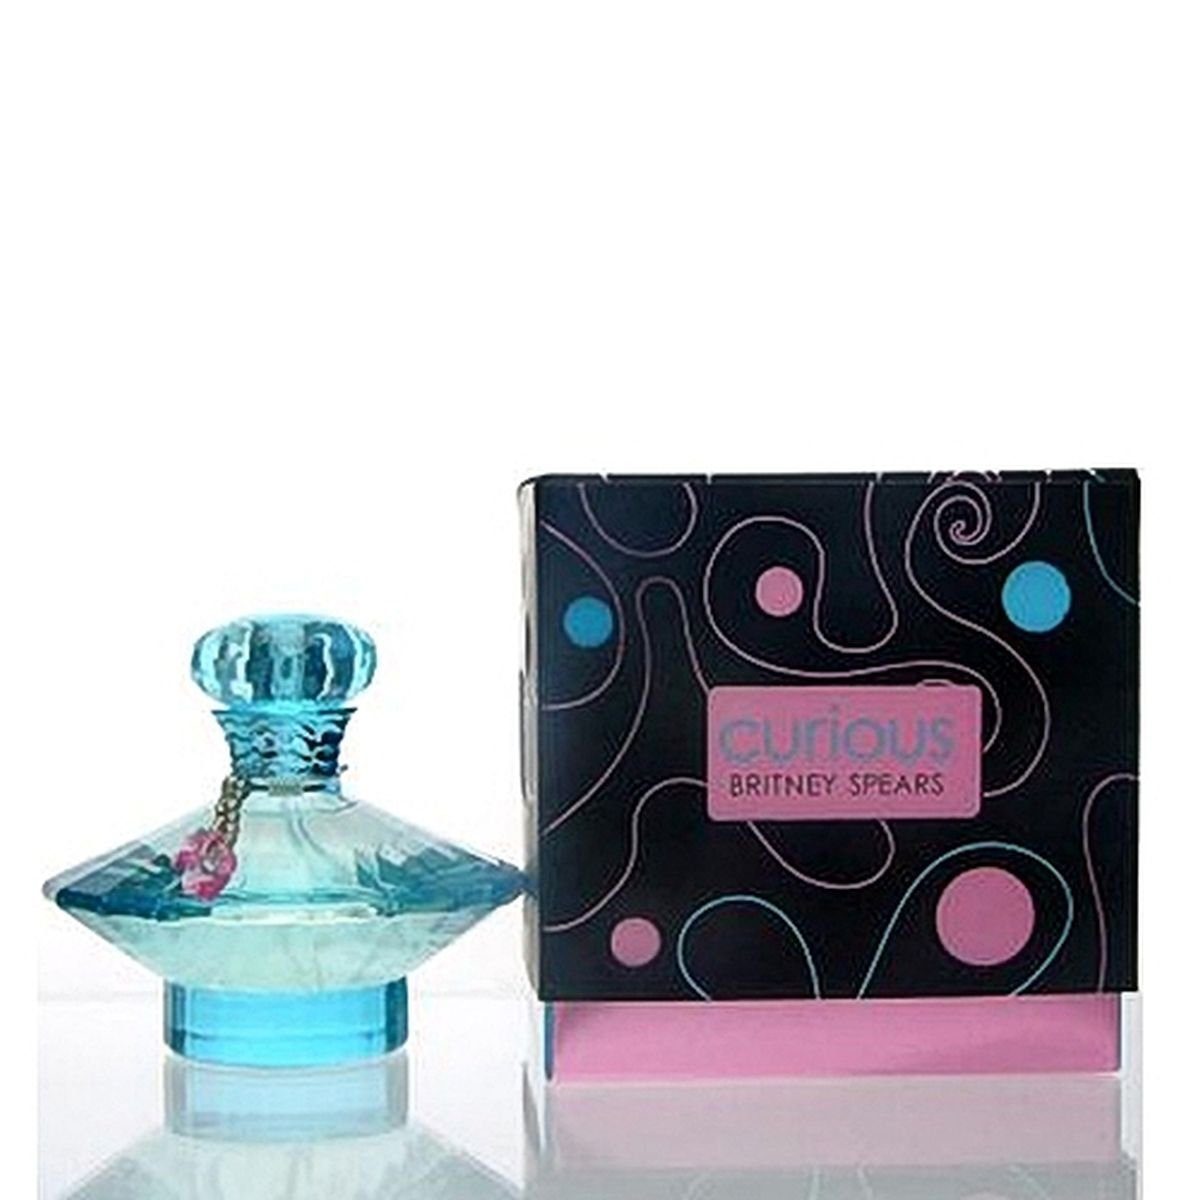 Britney Spears Eau de Curious de Spears Parfum ml 100 Eau Parfum Britney